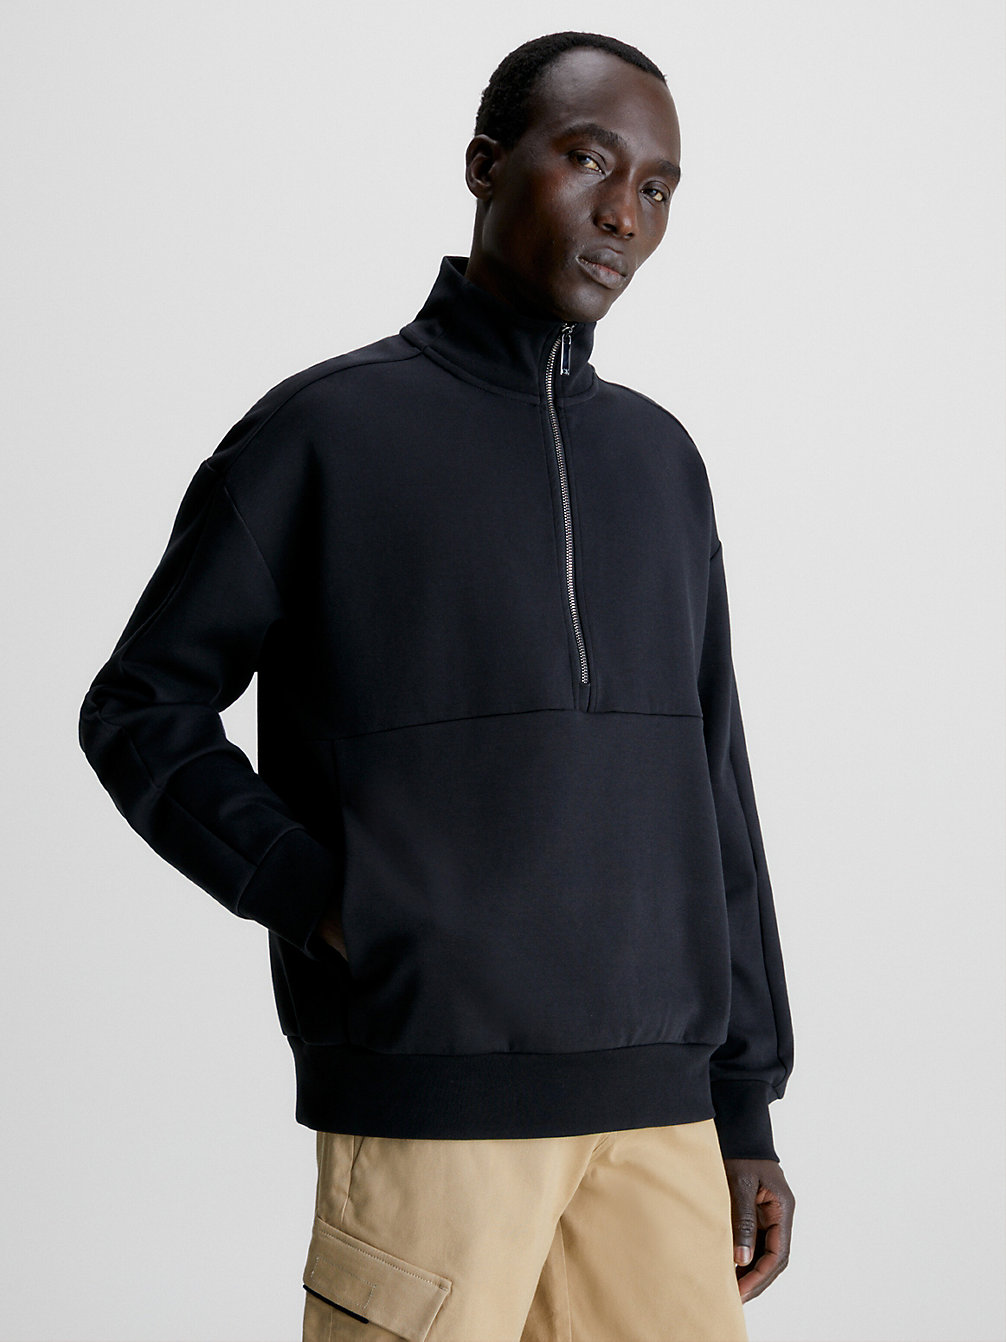 CK BLACK > Sweatshirt Aus Bio-Baumwolle Mit Reißverschluss > undefined men - Calvin Klein